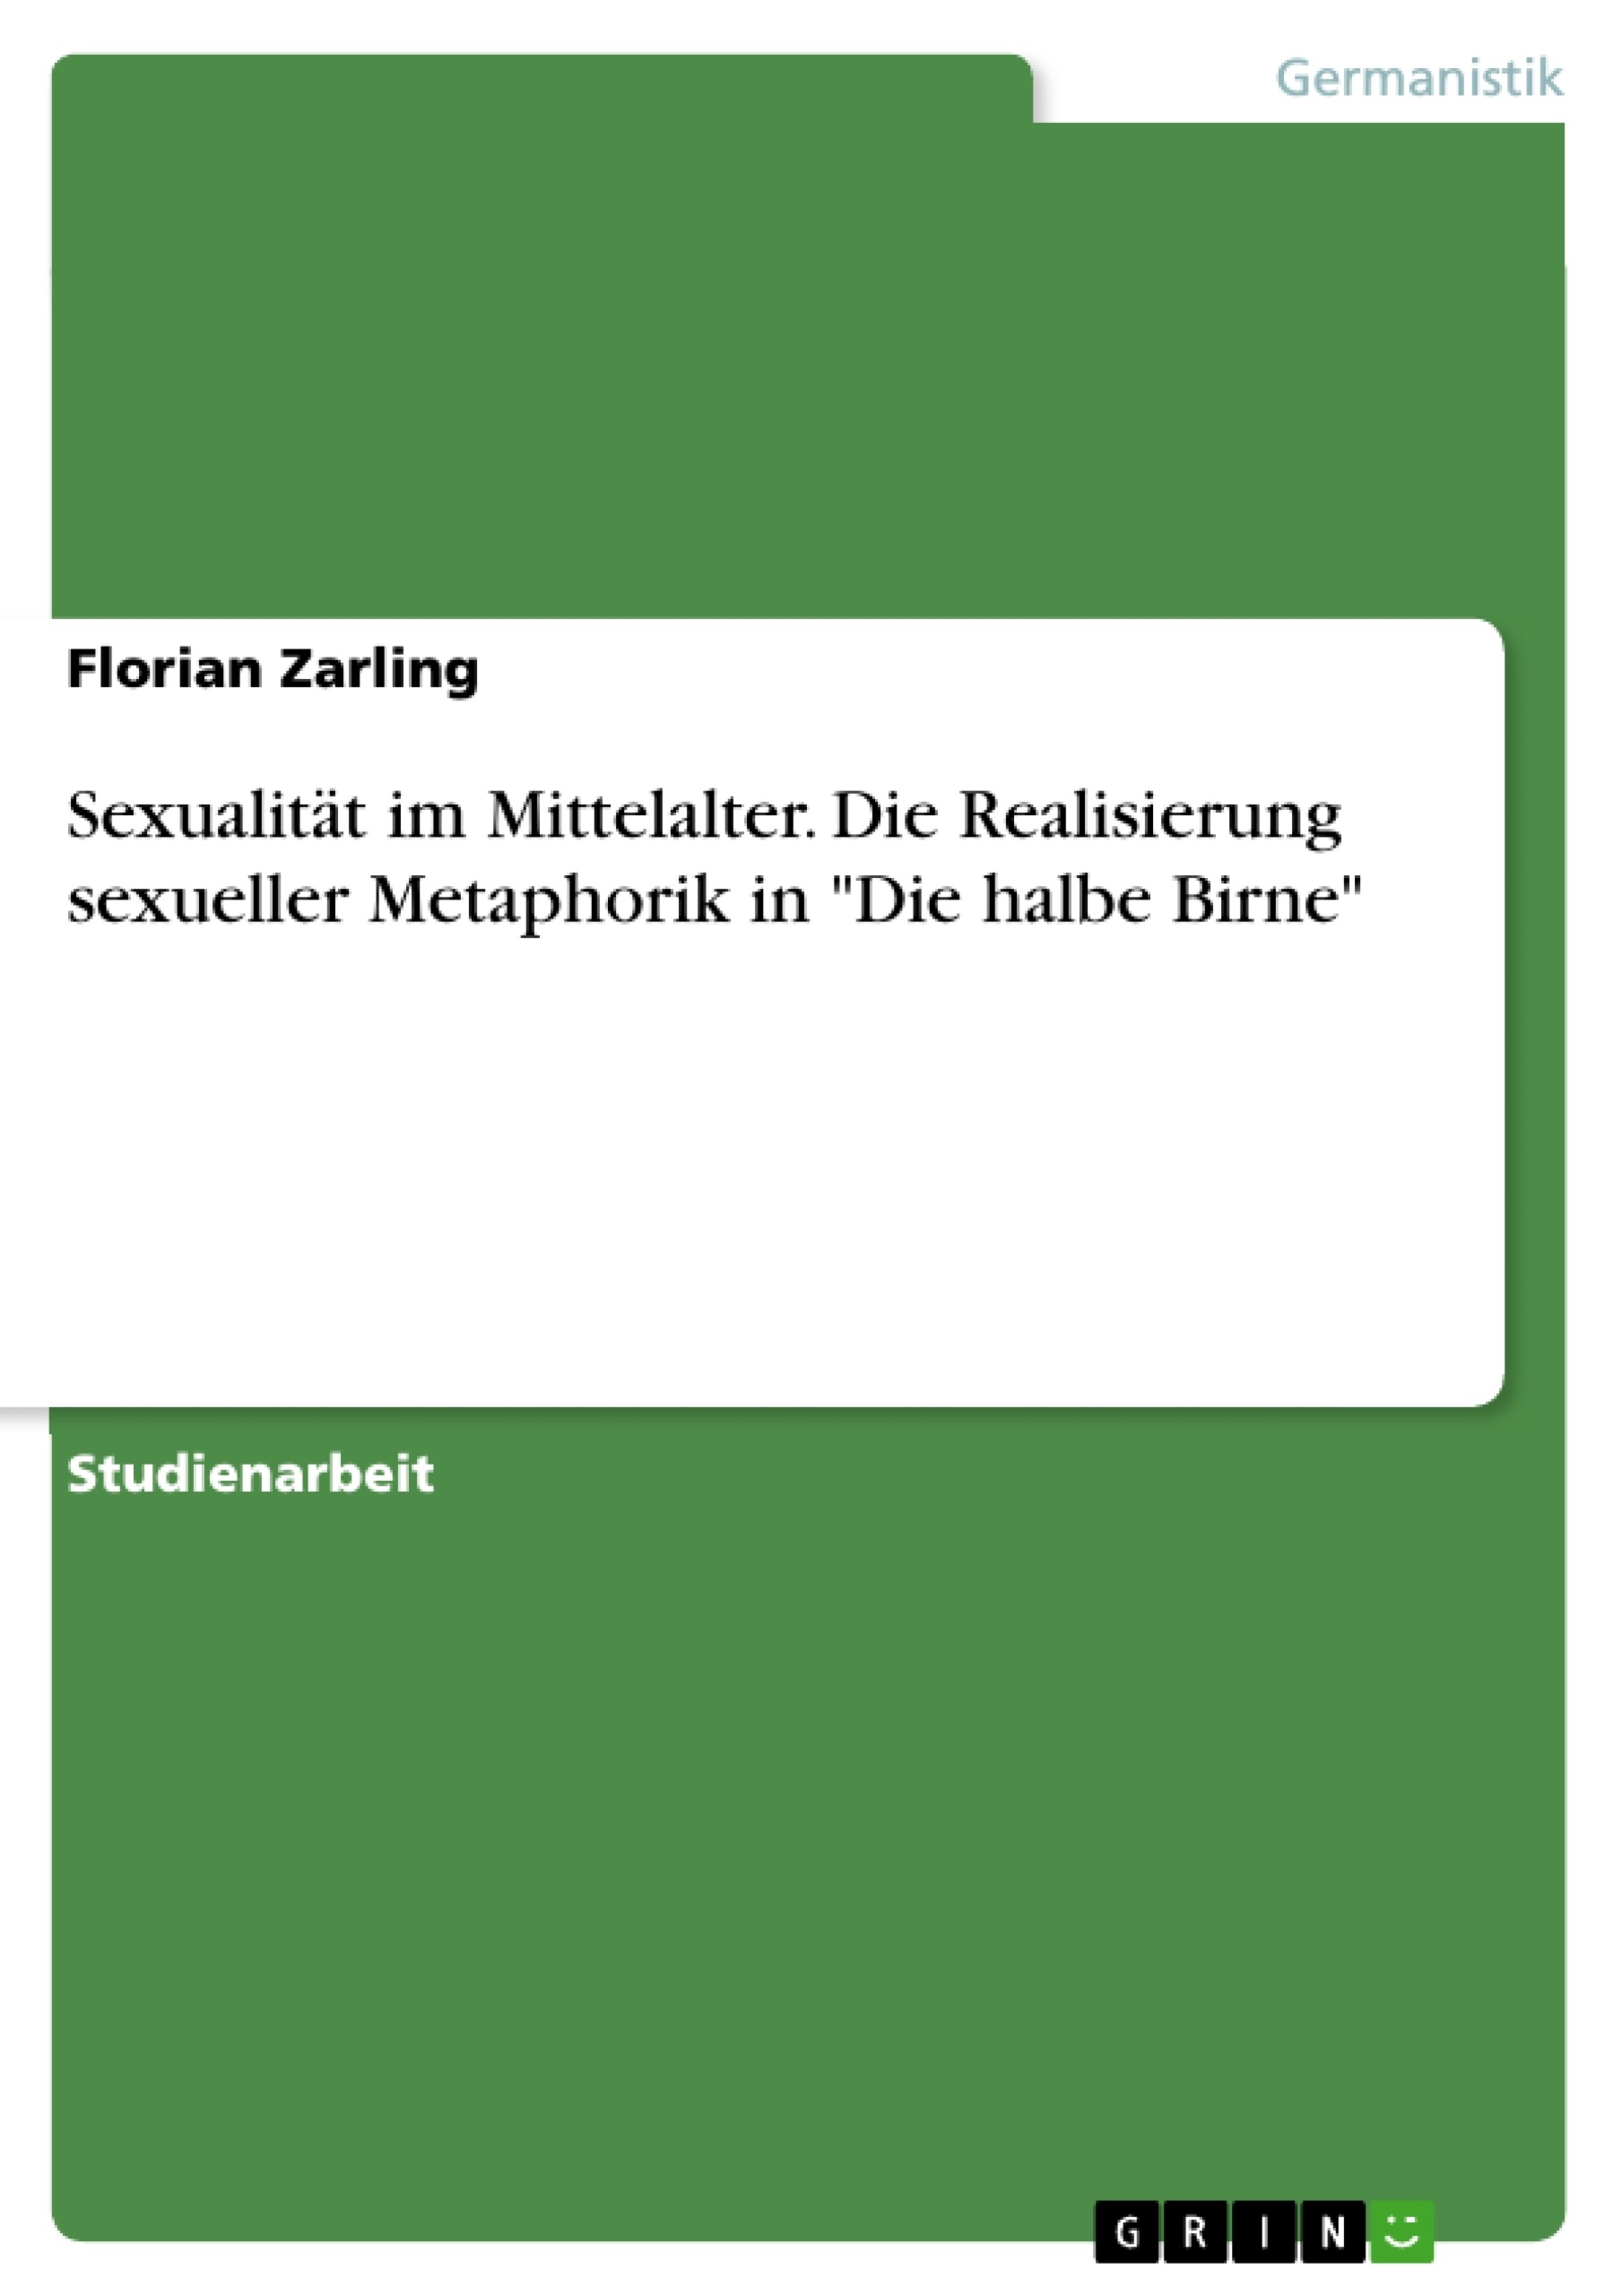 Title: Sexualität im Mittelalter. Die Realisierung sexueller Metaphorik in "Die halbe Birne"